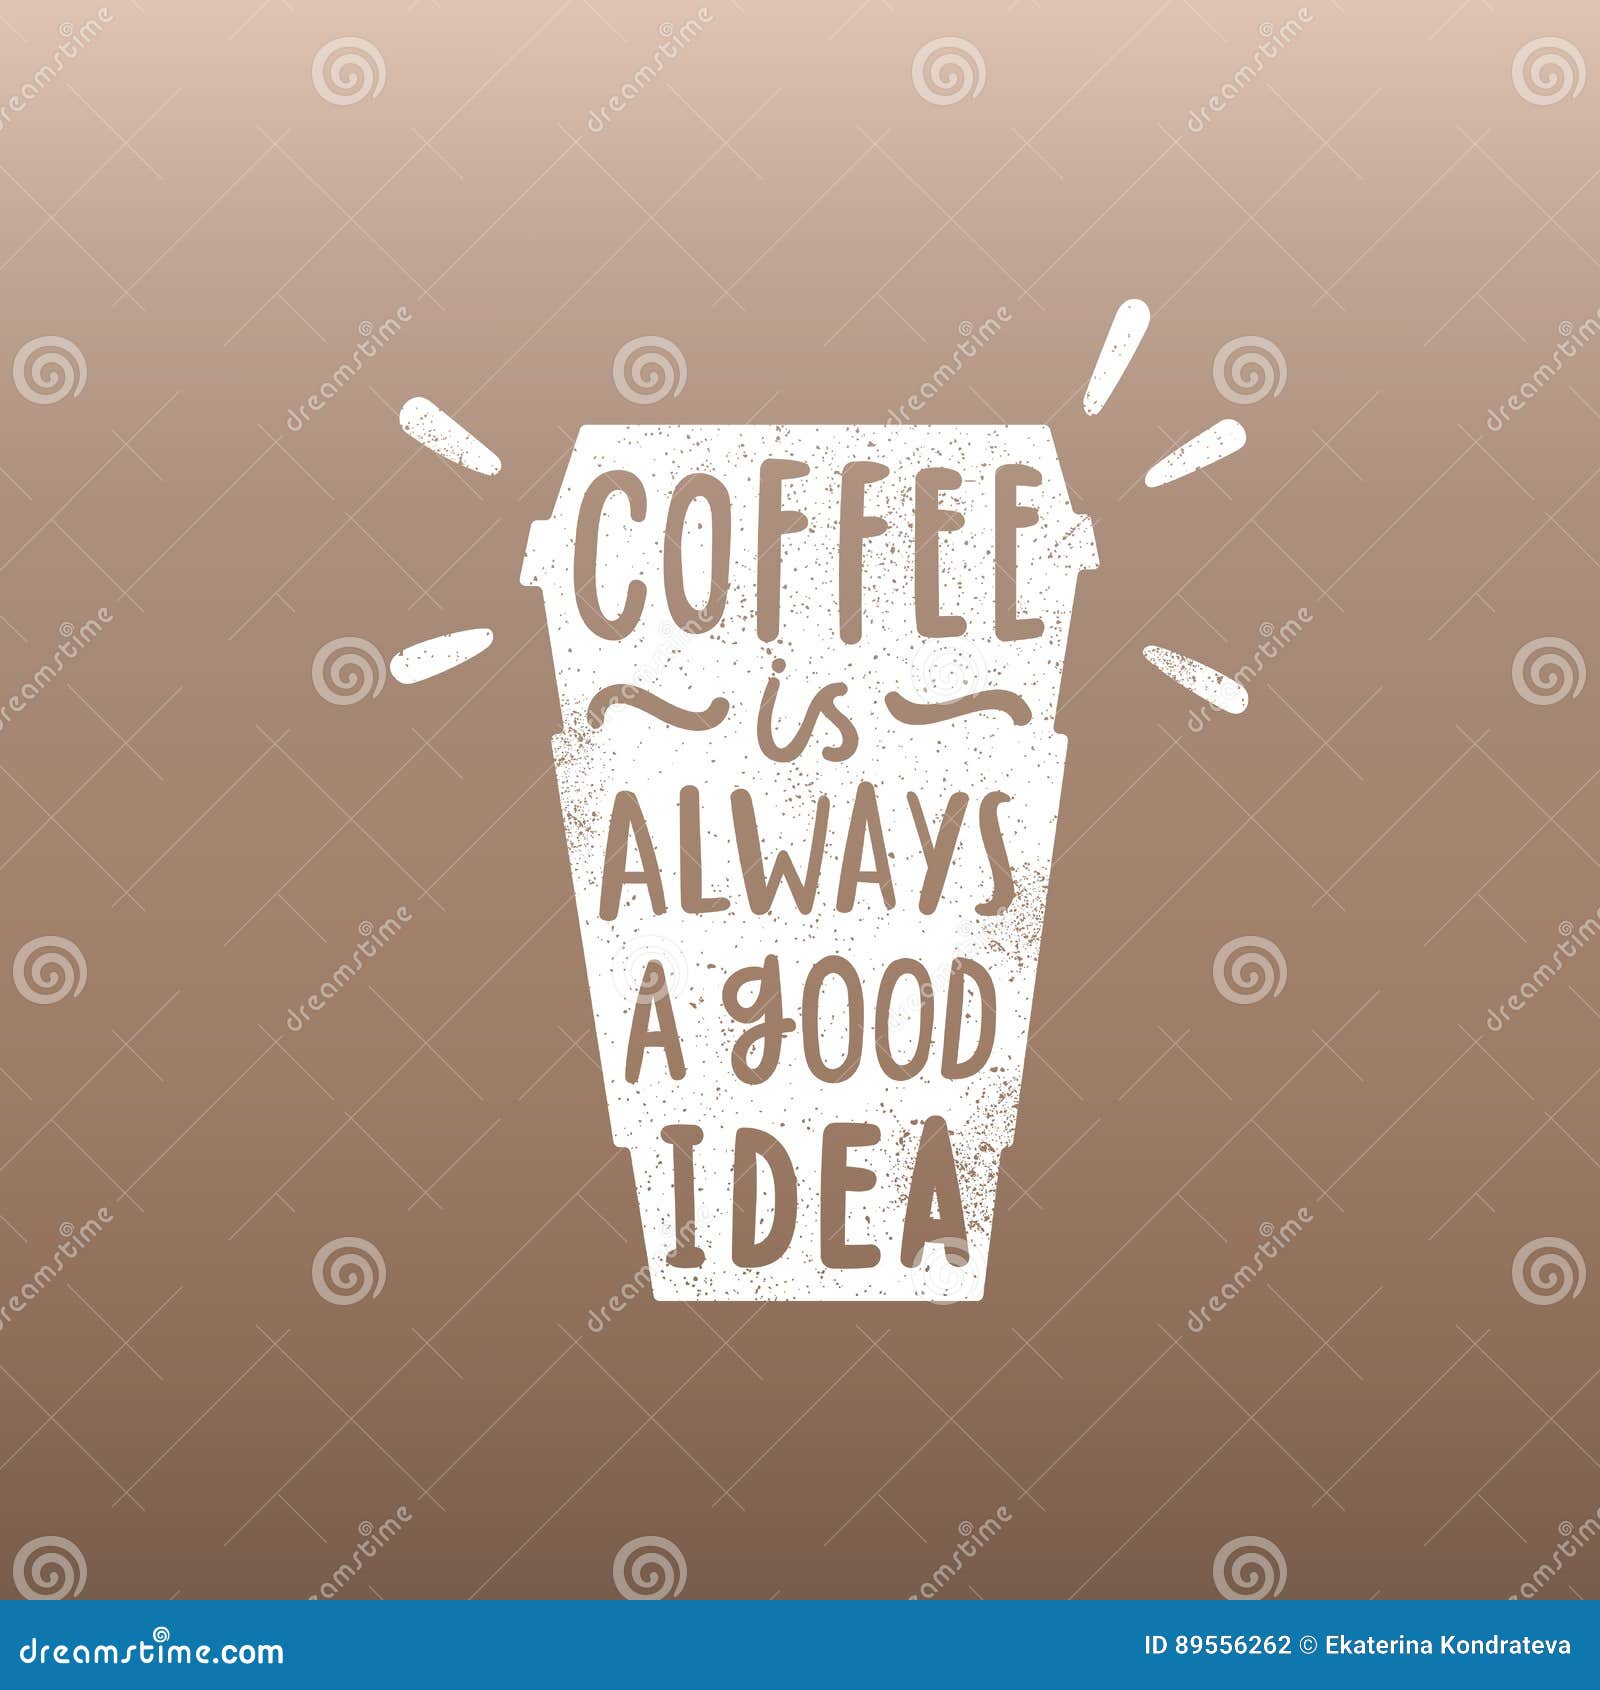 I think it s a good idea. Кофе всегда хорошая идея. Coffee always a good idea. На кружке Coffee is always a good idea. Табличкк coffe is always a good idea.